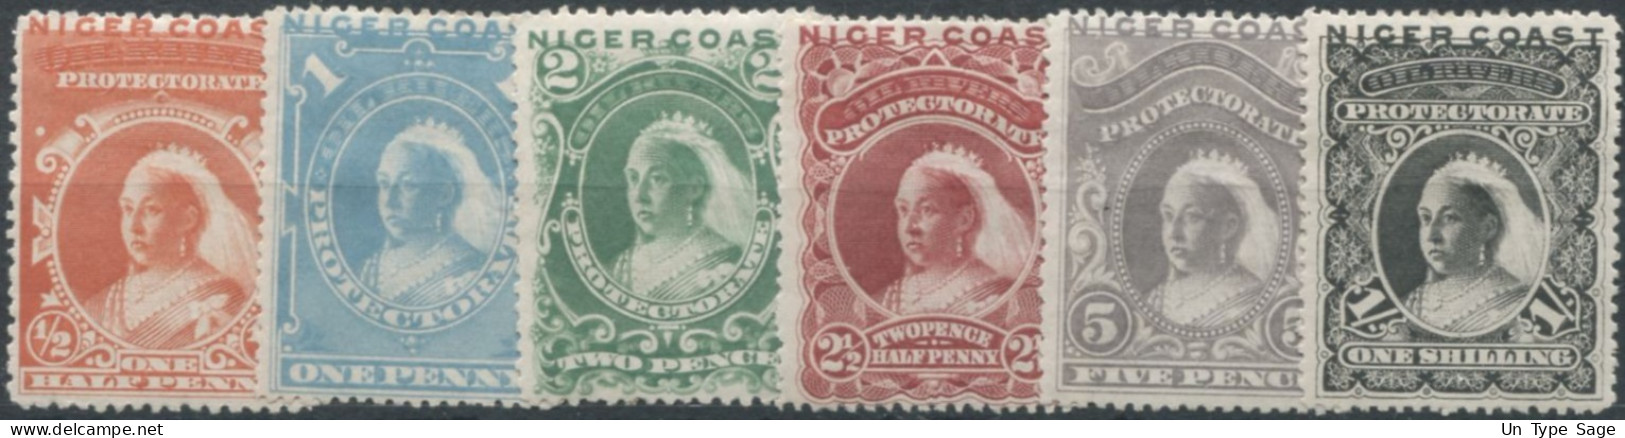 NIGER COAST N°20 à 25 - Neuf* - Cote 85€ - (F712) - Nigeria (...-1960)